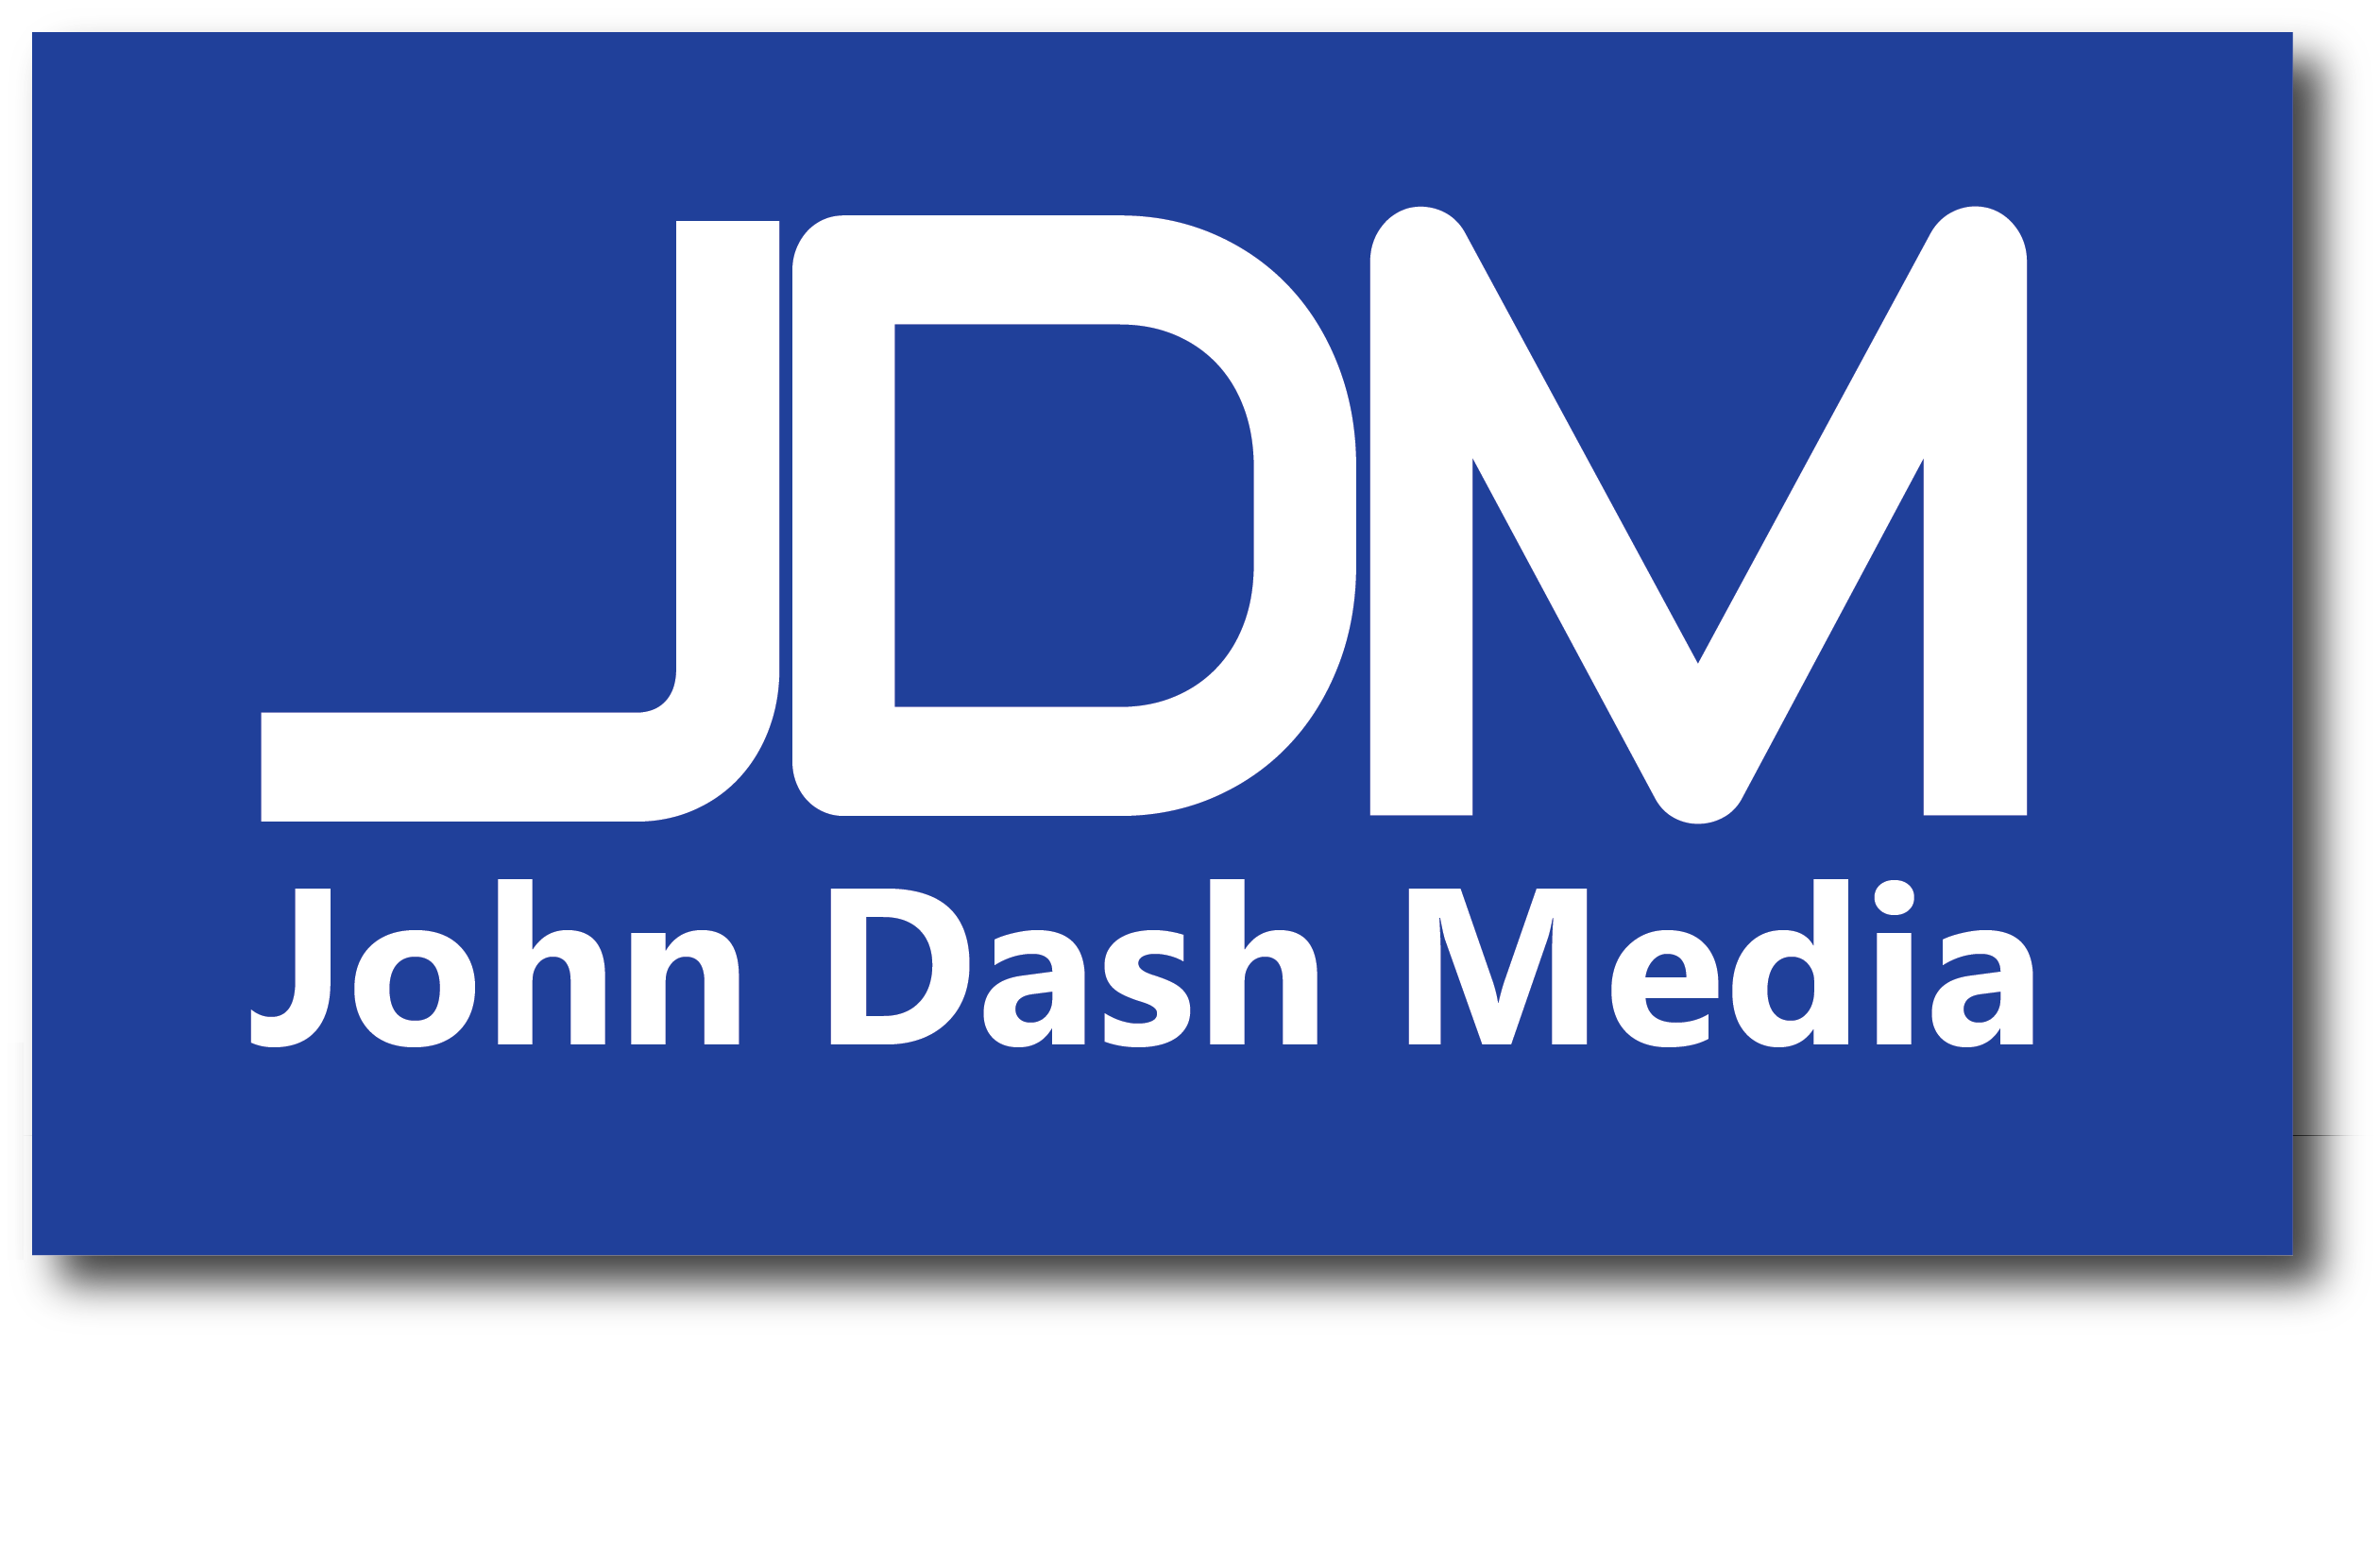 John Dash Media